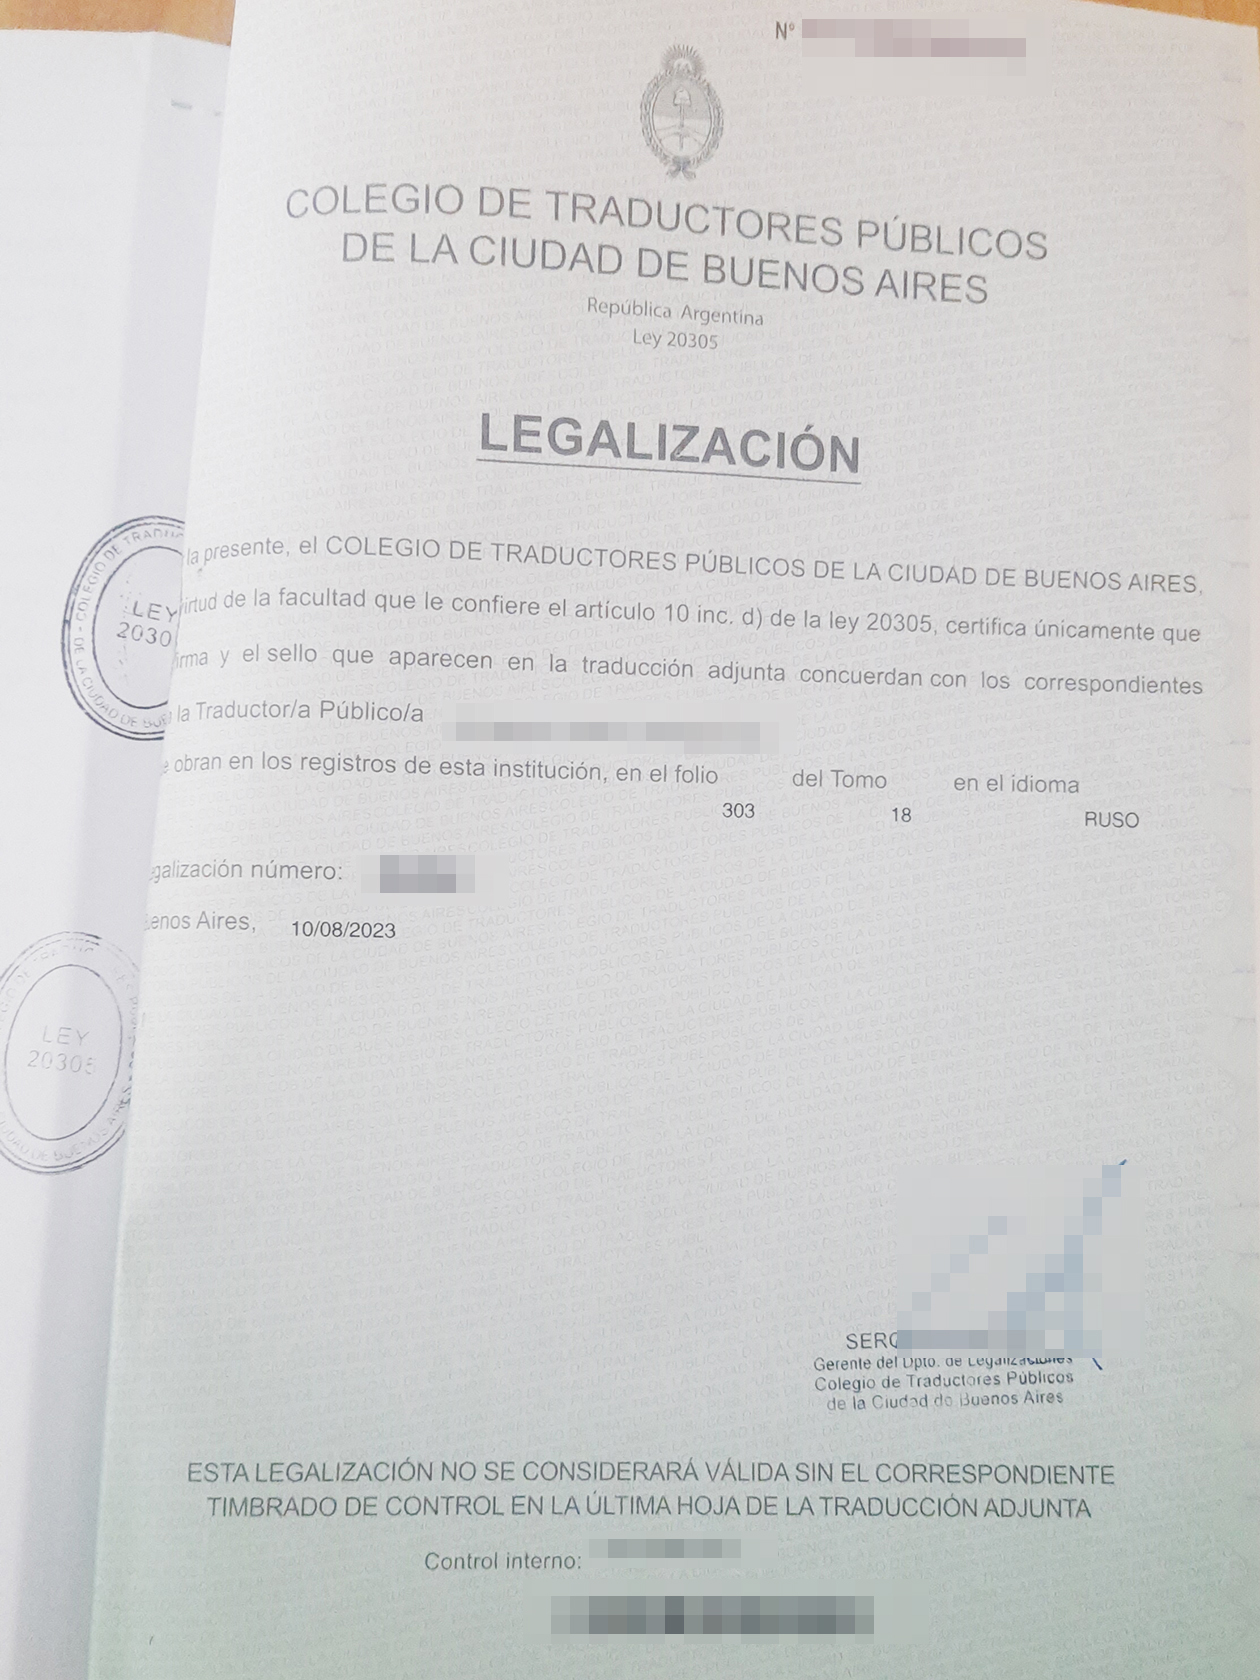 Вот так выглядит легализация перевода личного дела из российской школы в коллегии переводчиков Буэнос-Айреса